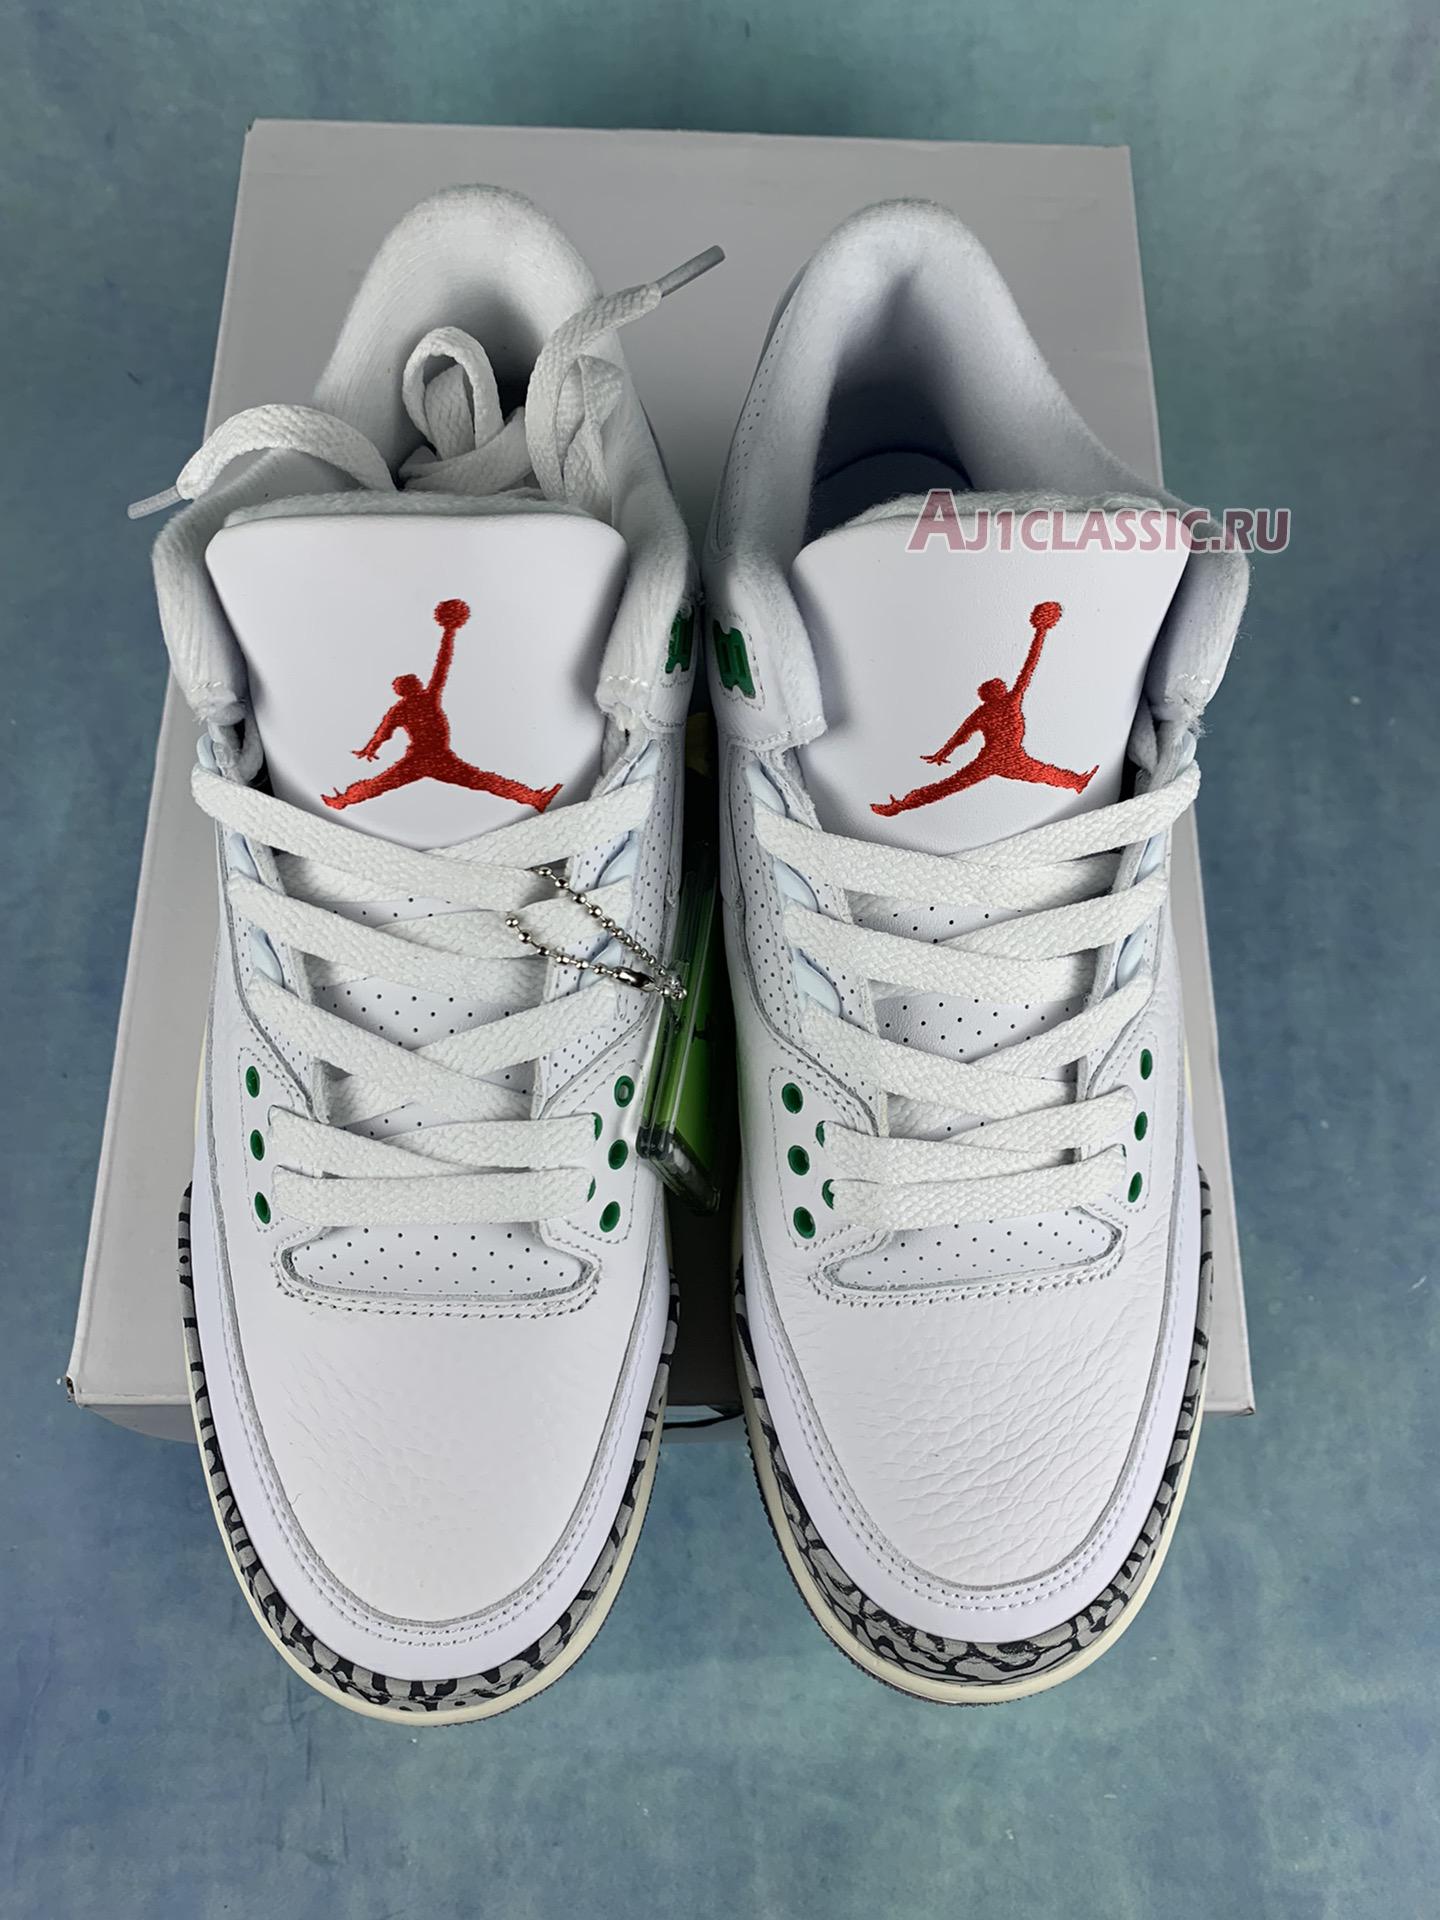 Air Jordan 3 Retro "Lucky Green" CK9246-136